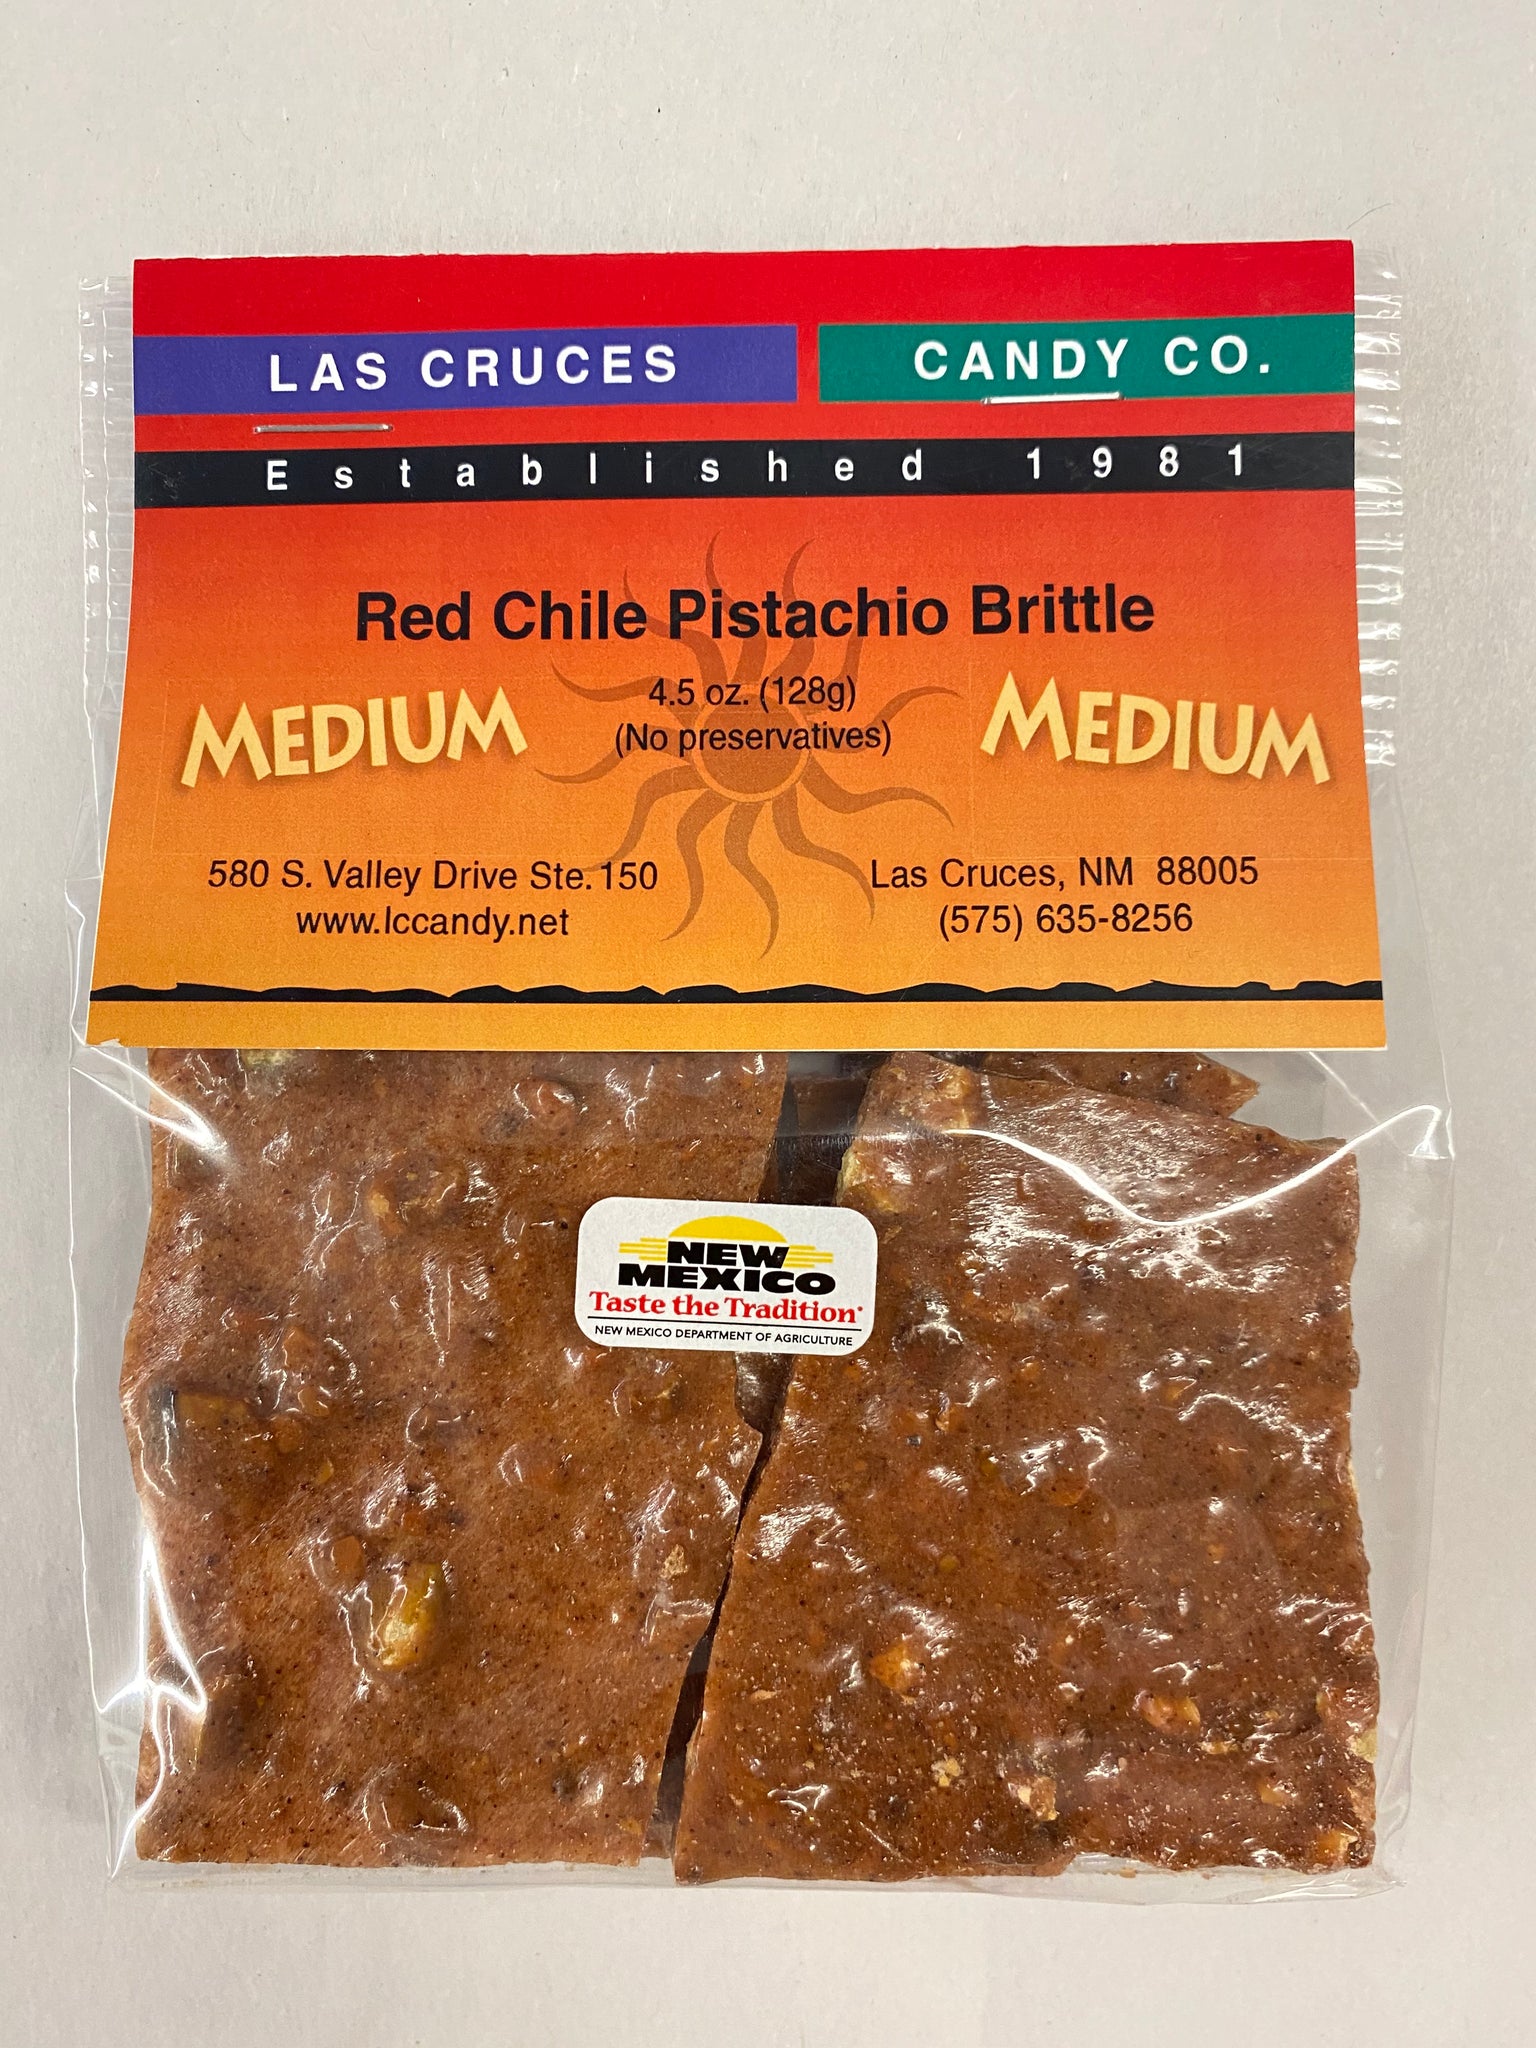 Red Chile Pistachio Brittle